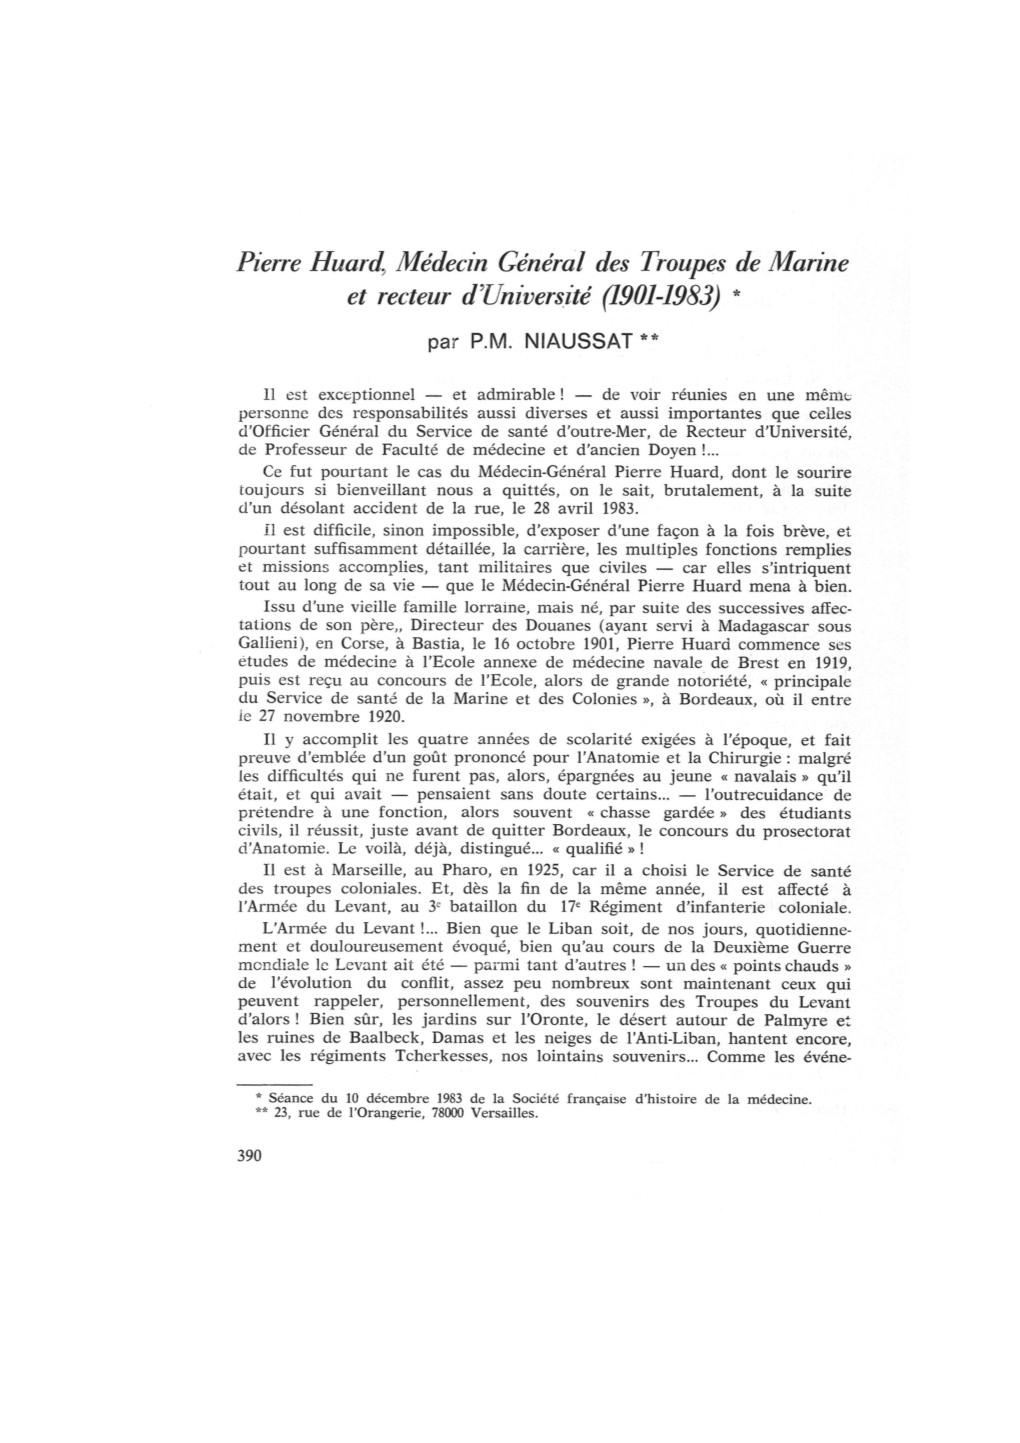 Pierre Huard, Médecin Général Des Troupes De Marine Et Recteur D'université (1901-1983) *